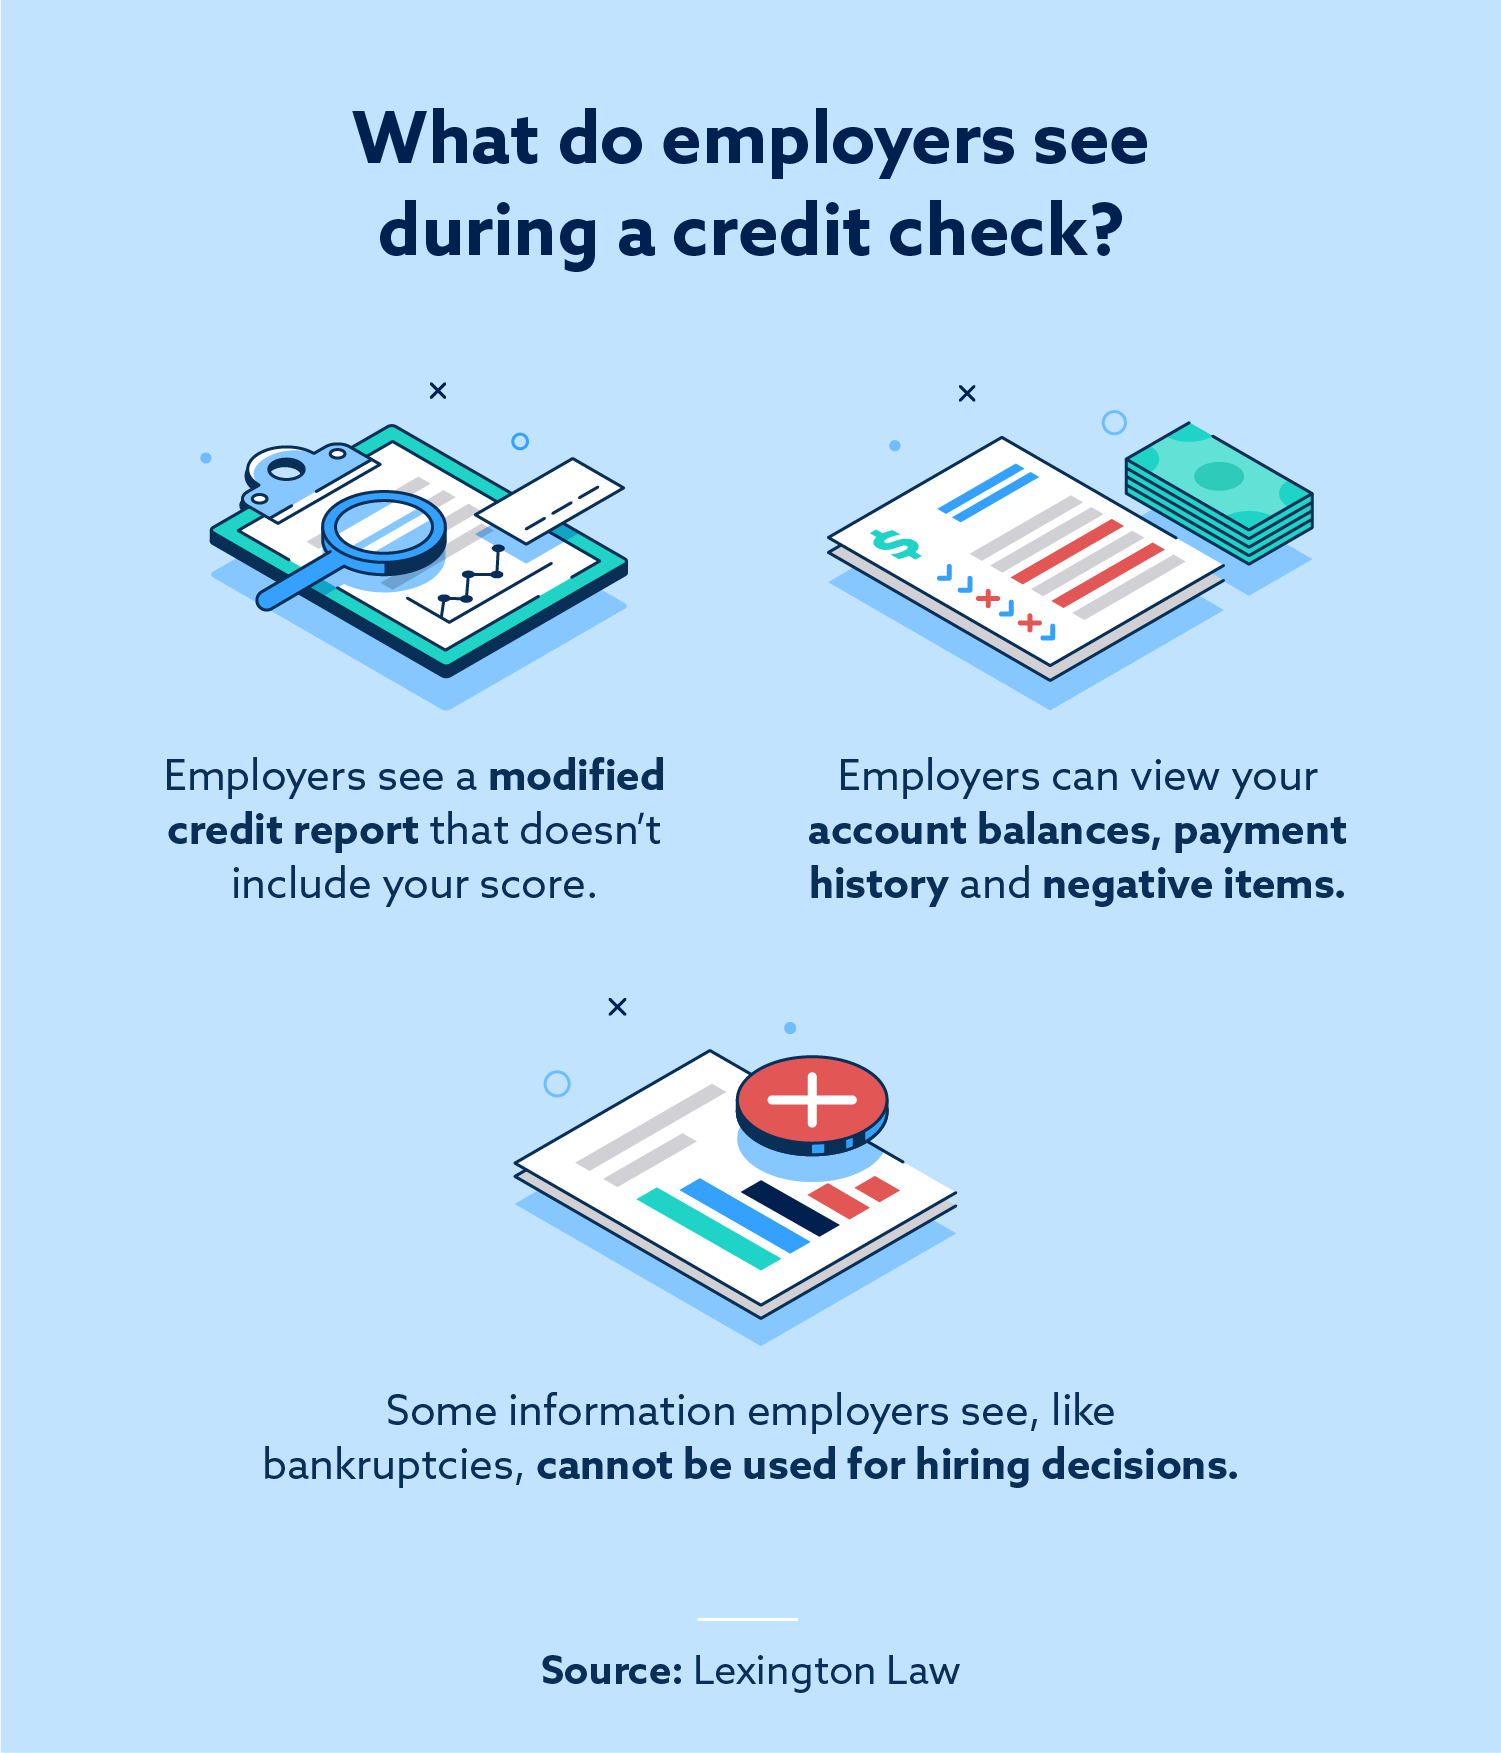 Os empregadores verificam a pontuação de crédito?